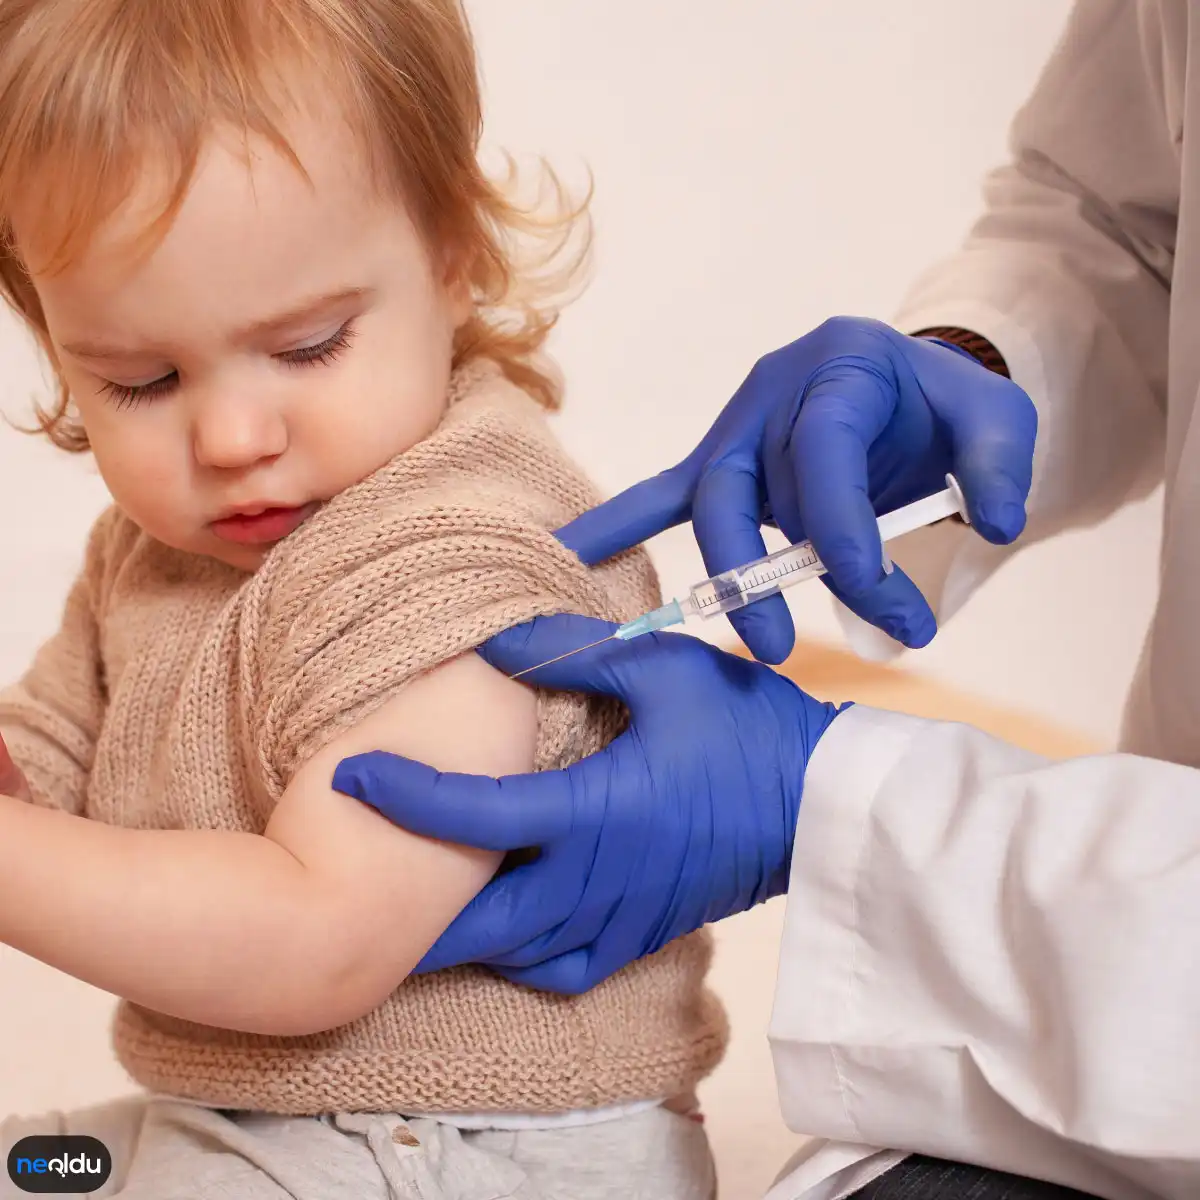 Bebeklik Döneminde Yapılan Aşılar